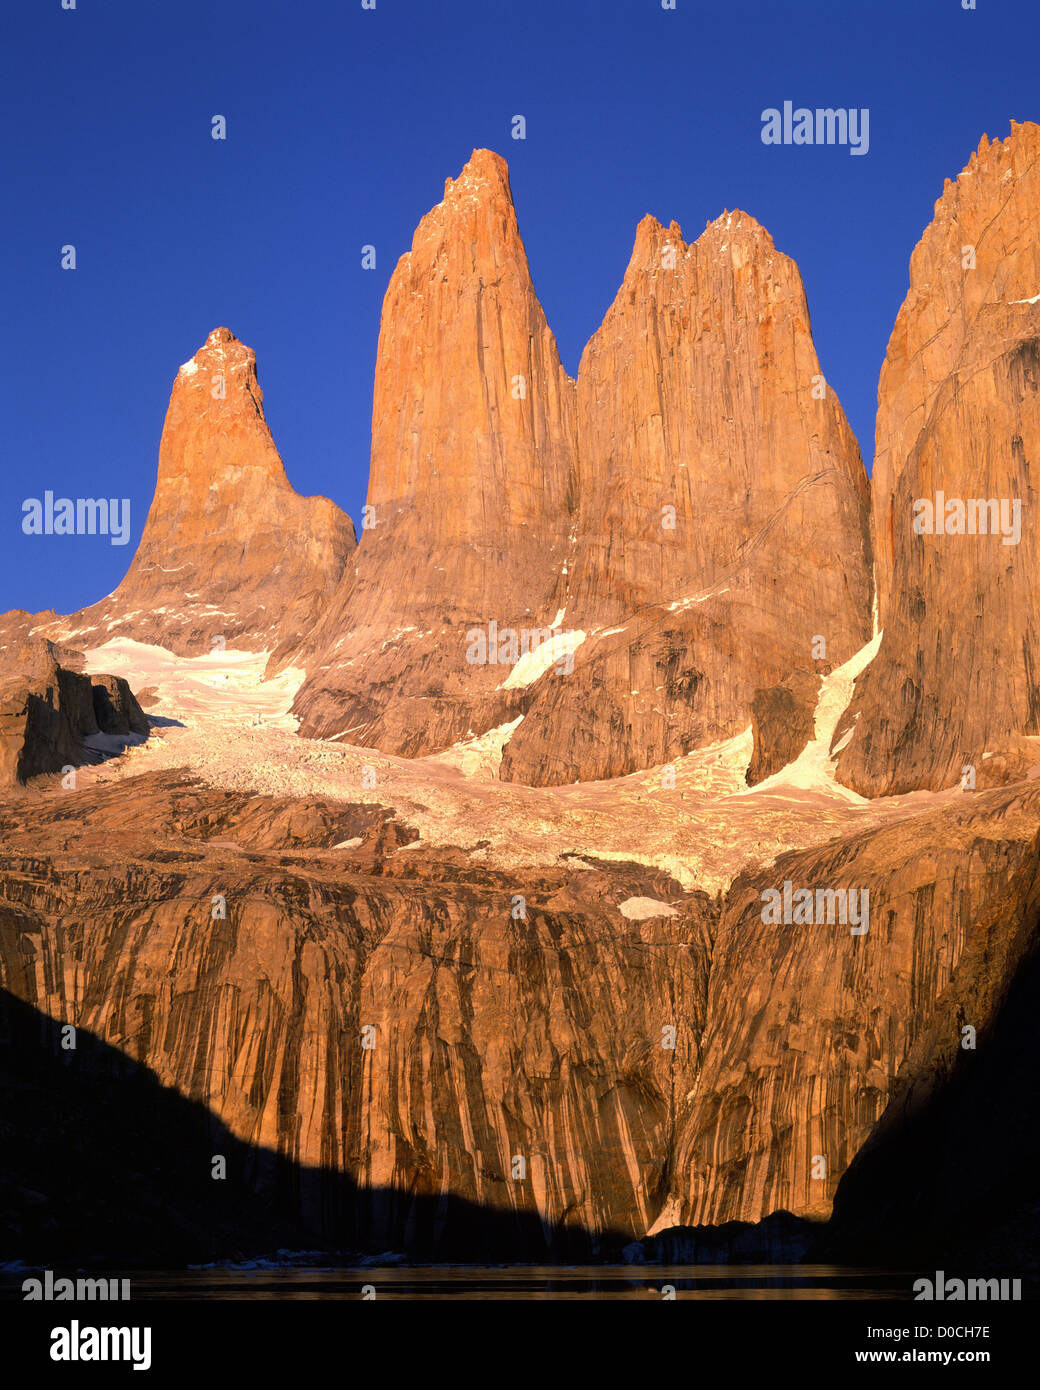 La luce del mattino illumina le Torri del Paine nella Patagonia cilena Foto Stock